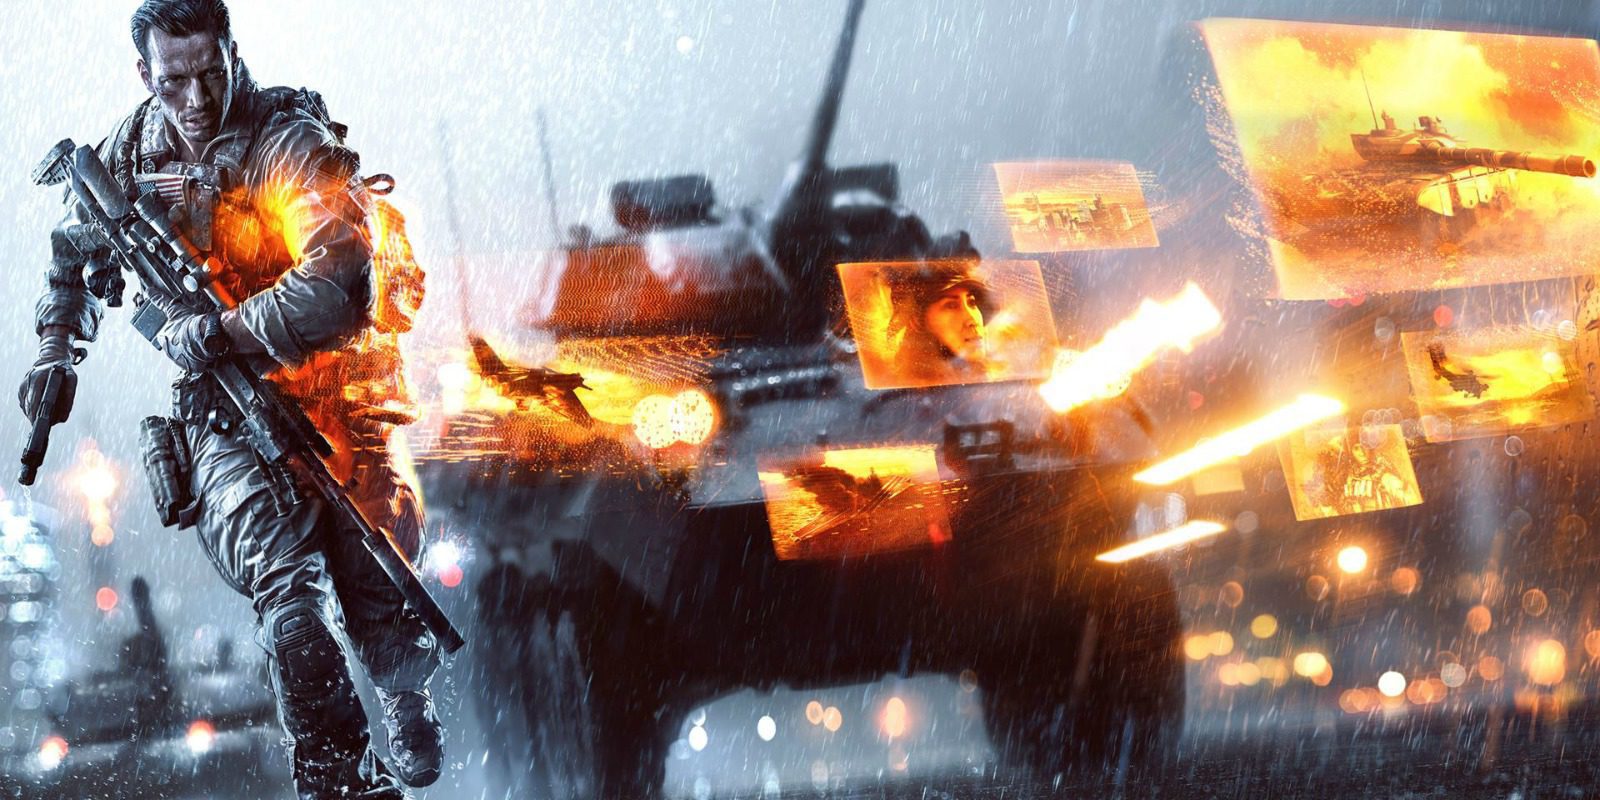 La franquicia Battlefield unificará su interfaz empezando por 'Battlefield 4'